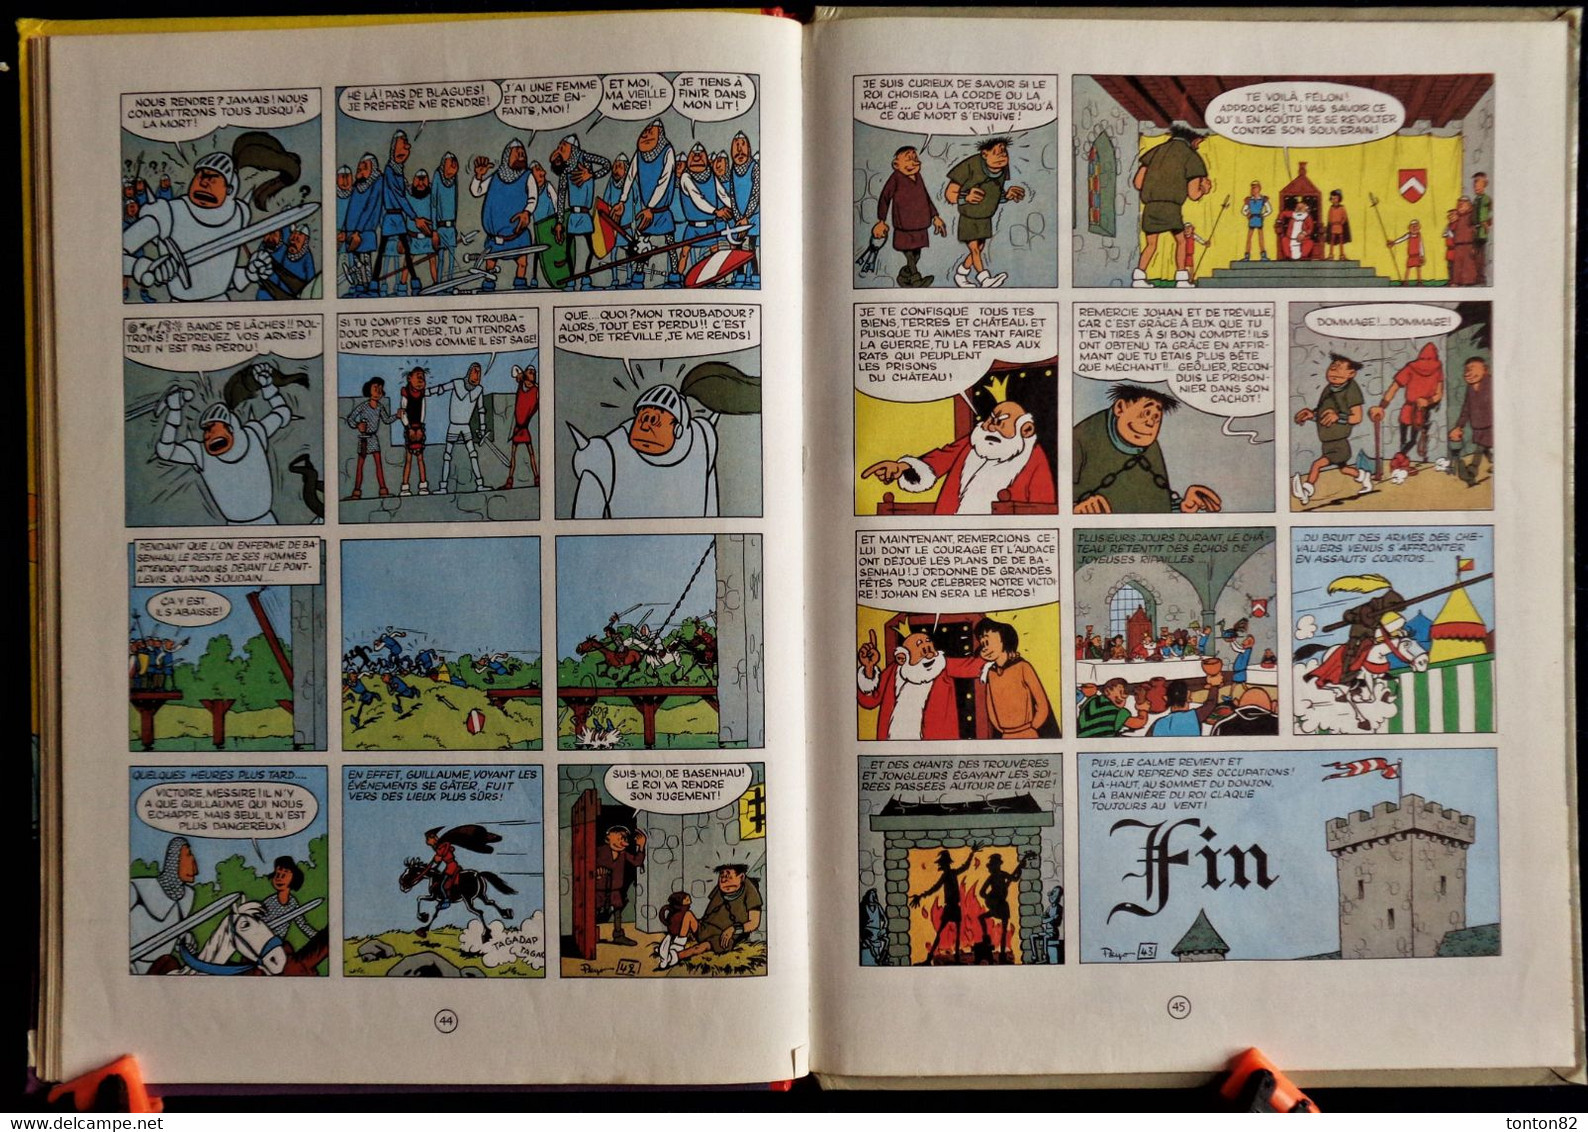 Peyo - Johan N° 1 - Le châtiment de BASENHAU - Éditions Dupuis - ( 1976 ) .